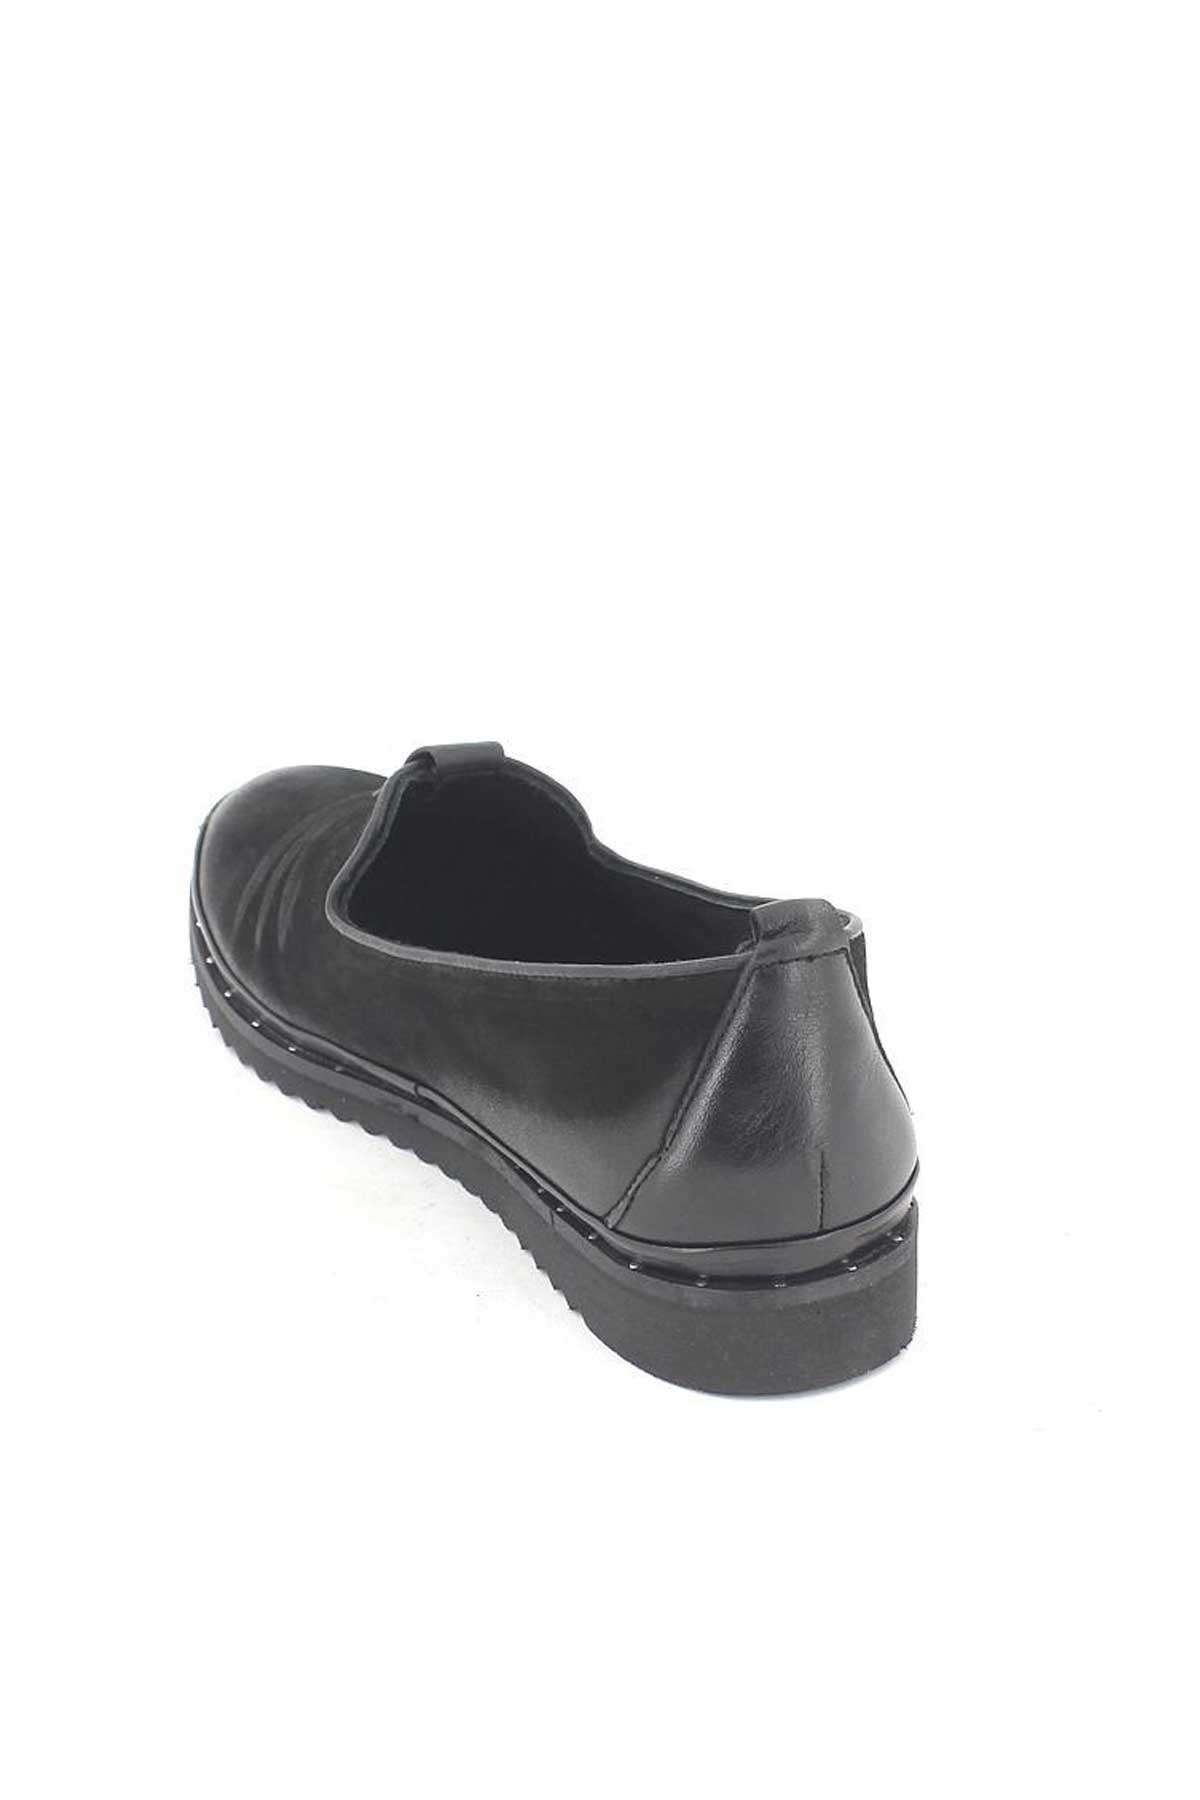 Kadın Deri Comfort Ayakkabı Siyah 1810021K - Thumbnail